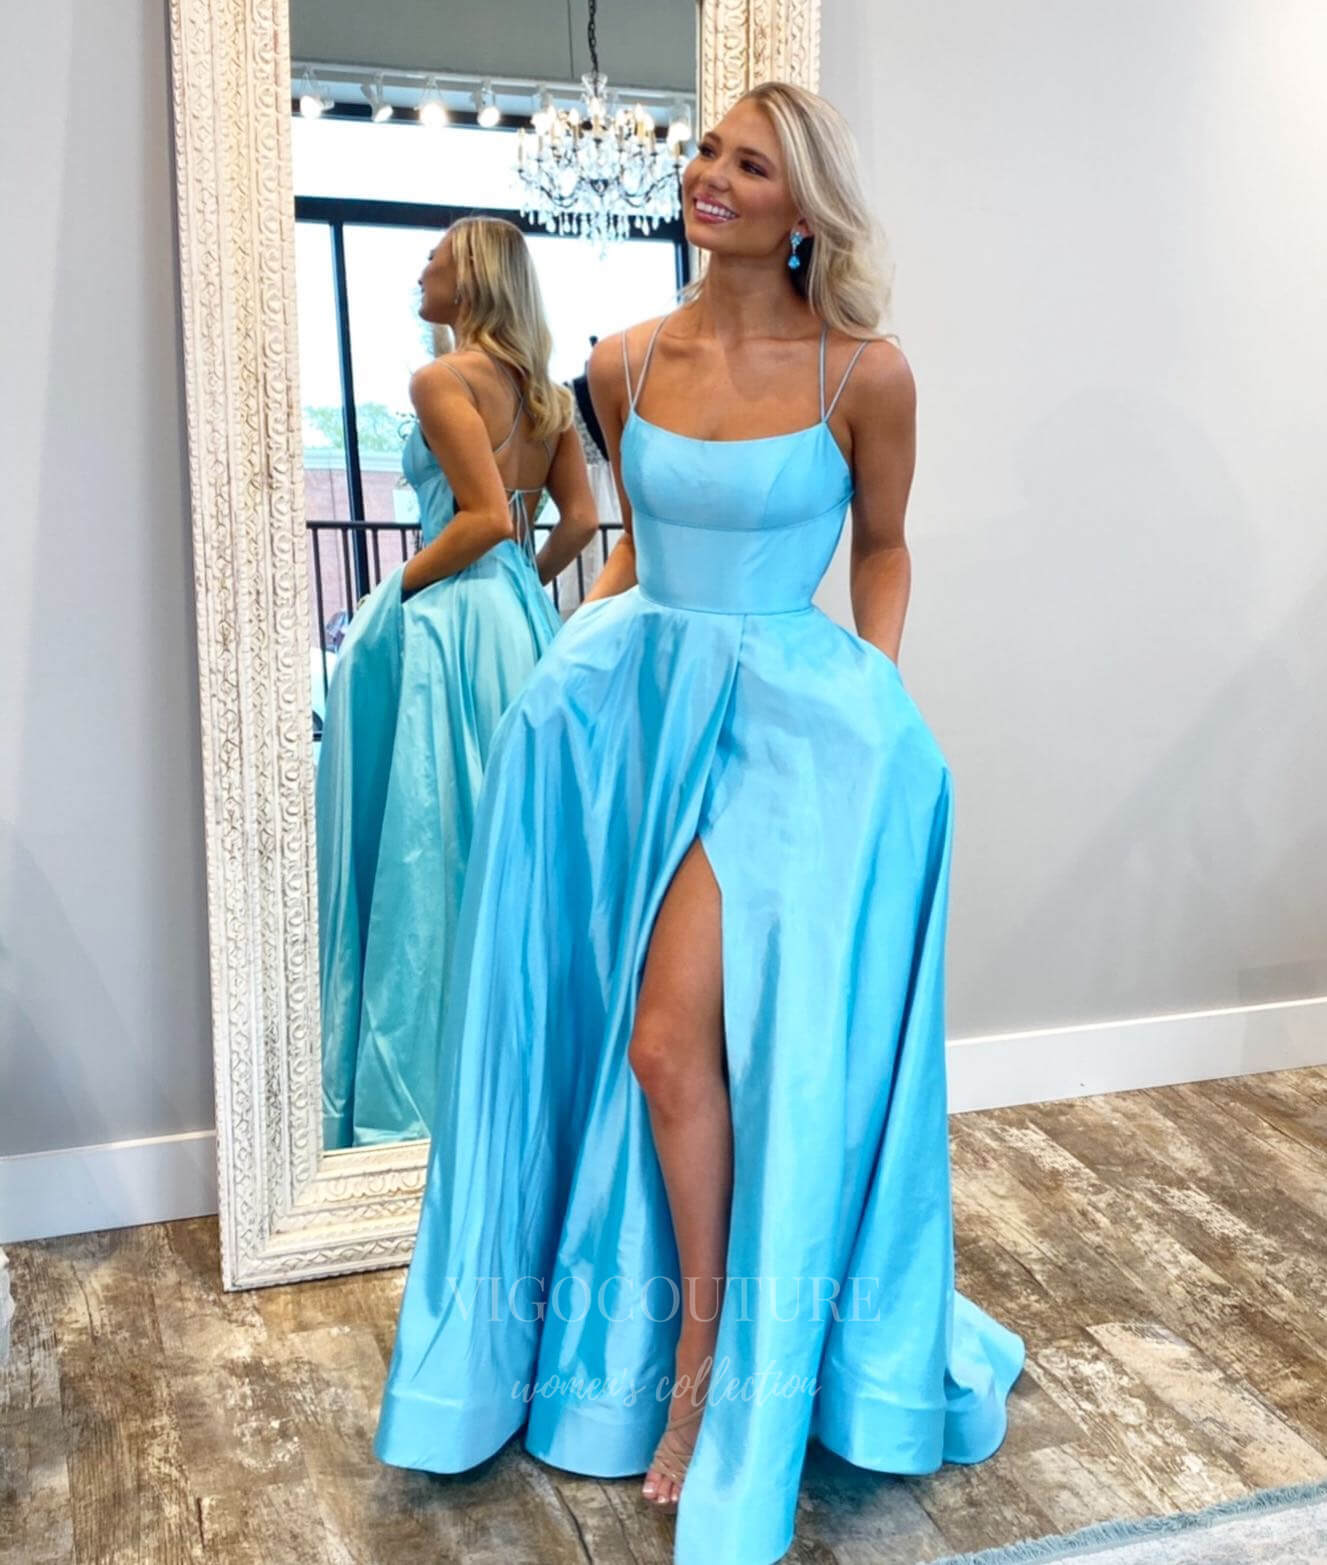 vigocouture-Light Blue Satin Spaghetti Strap Prom Dress 20999-Prom Dresses-vigocouture-Light Blue-US2-